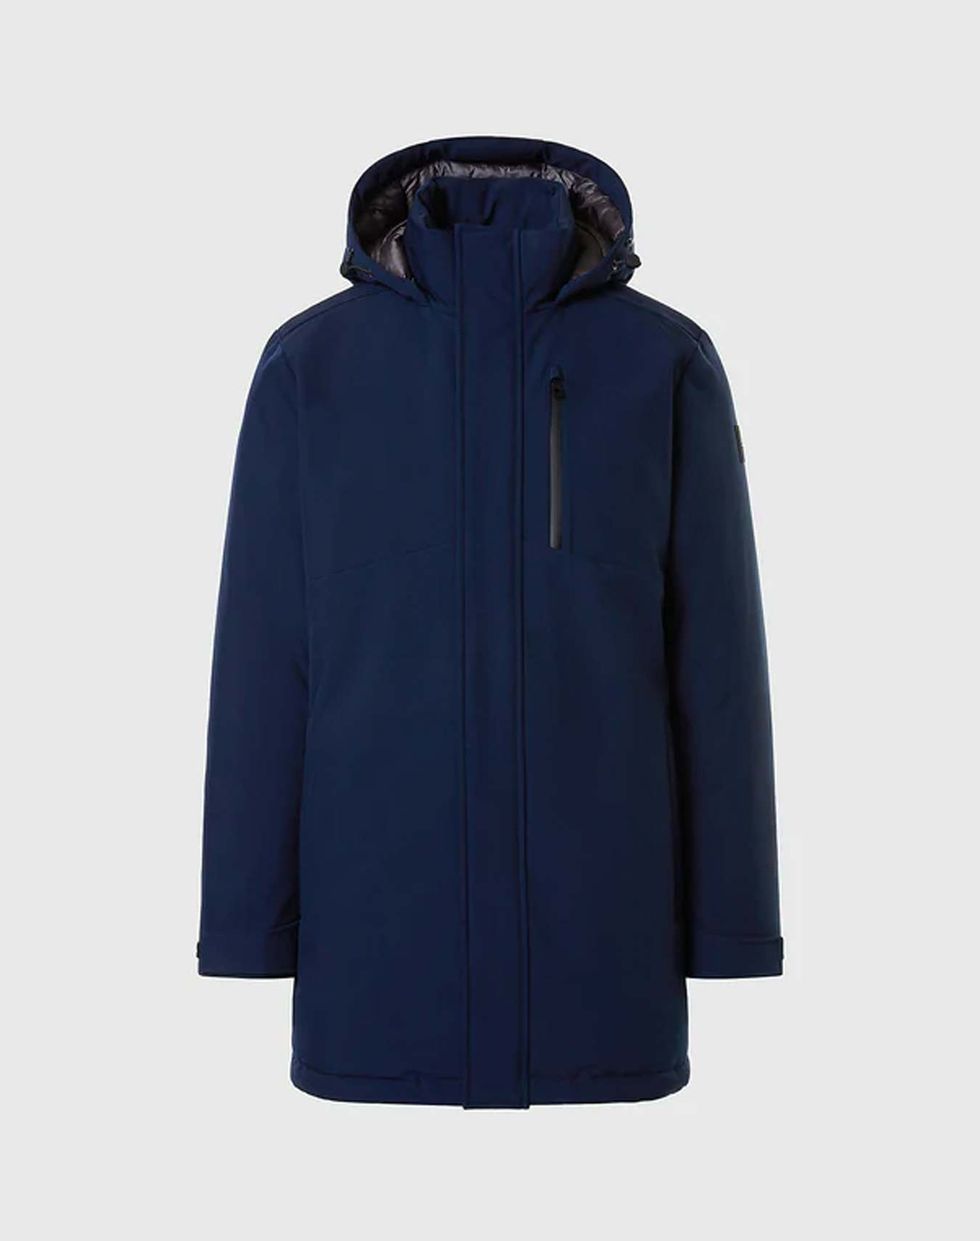 a blue jacket with a hood